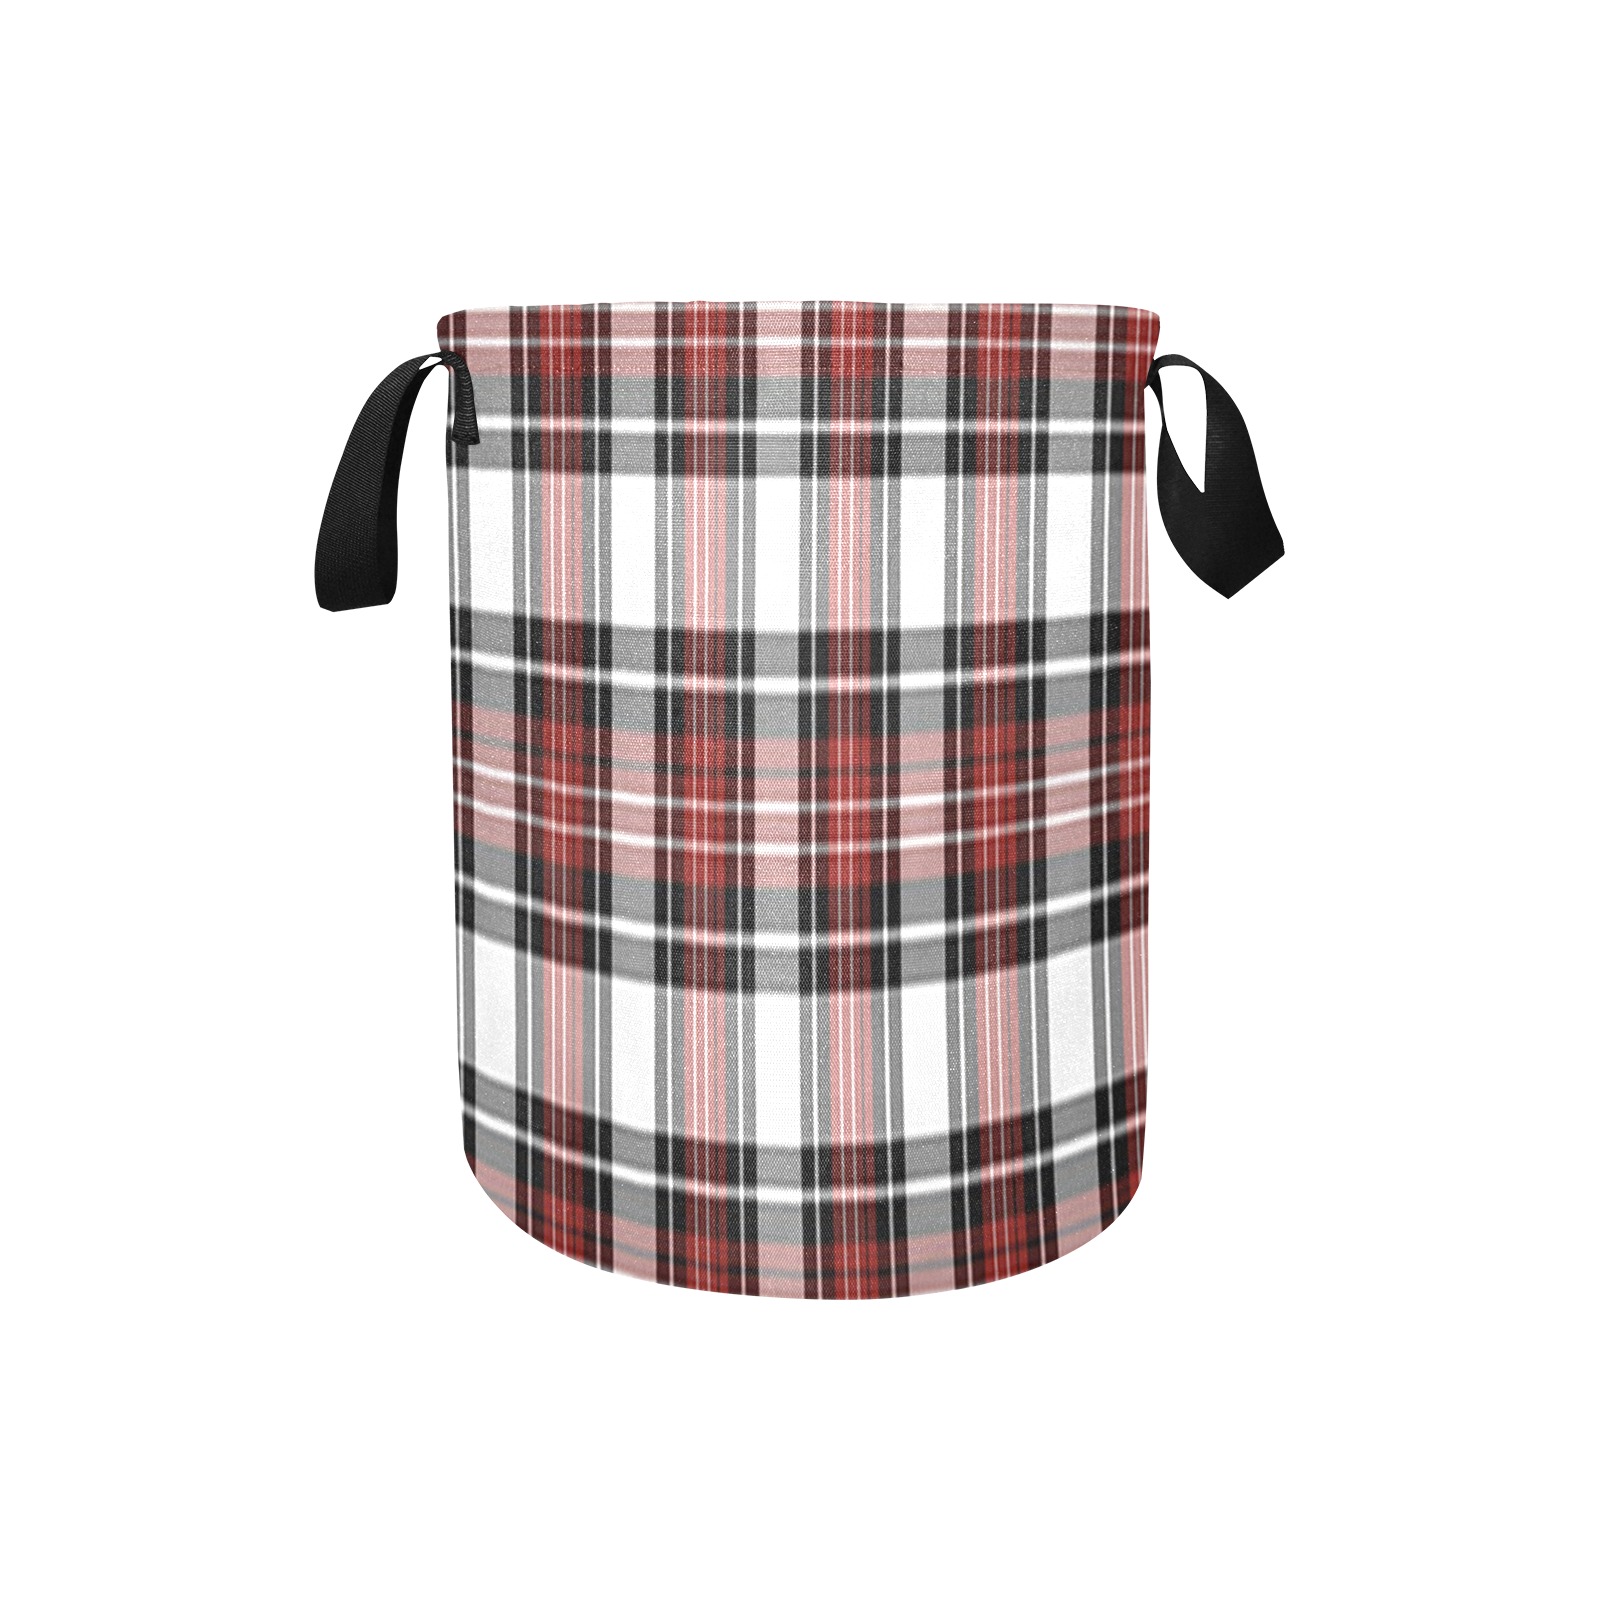 Red Black Plaid Laundry Bag (Small)